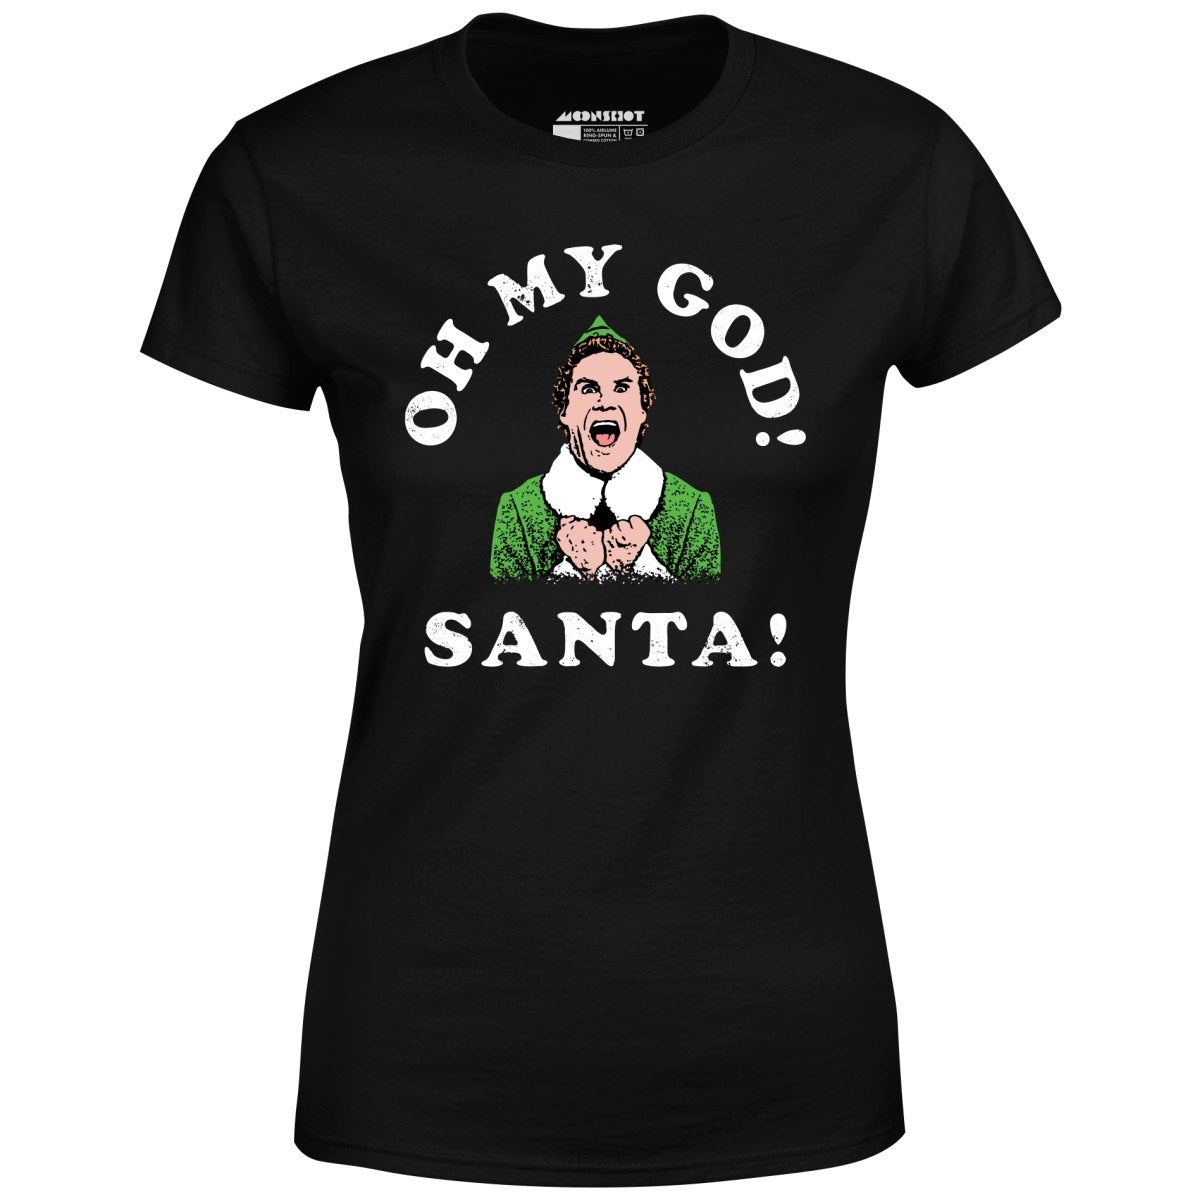 Oh My God Santa! - Women's T-Shirt